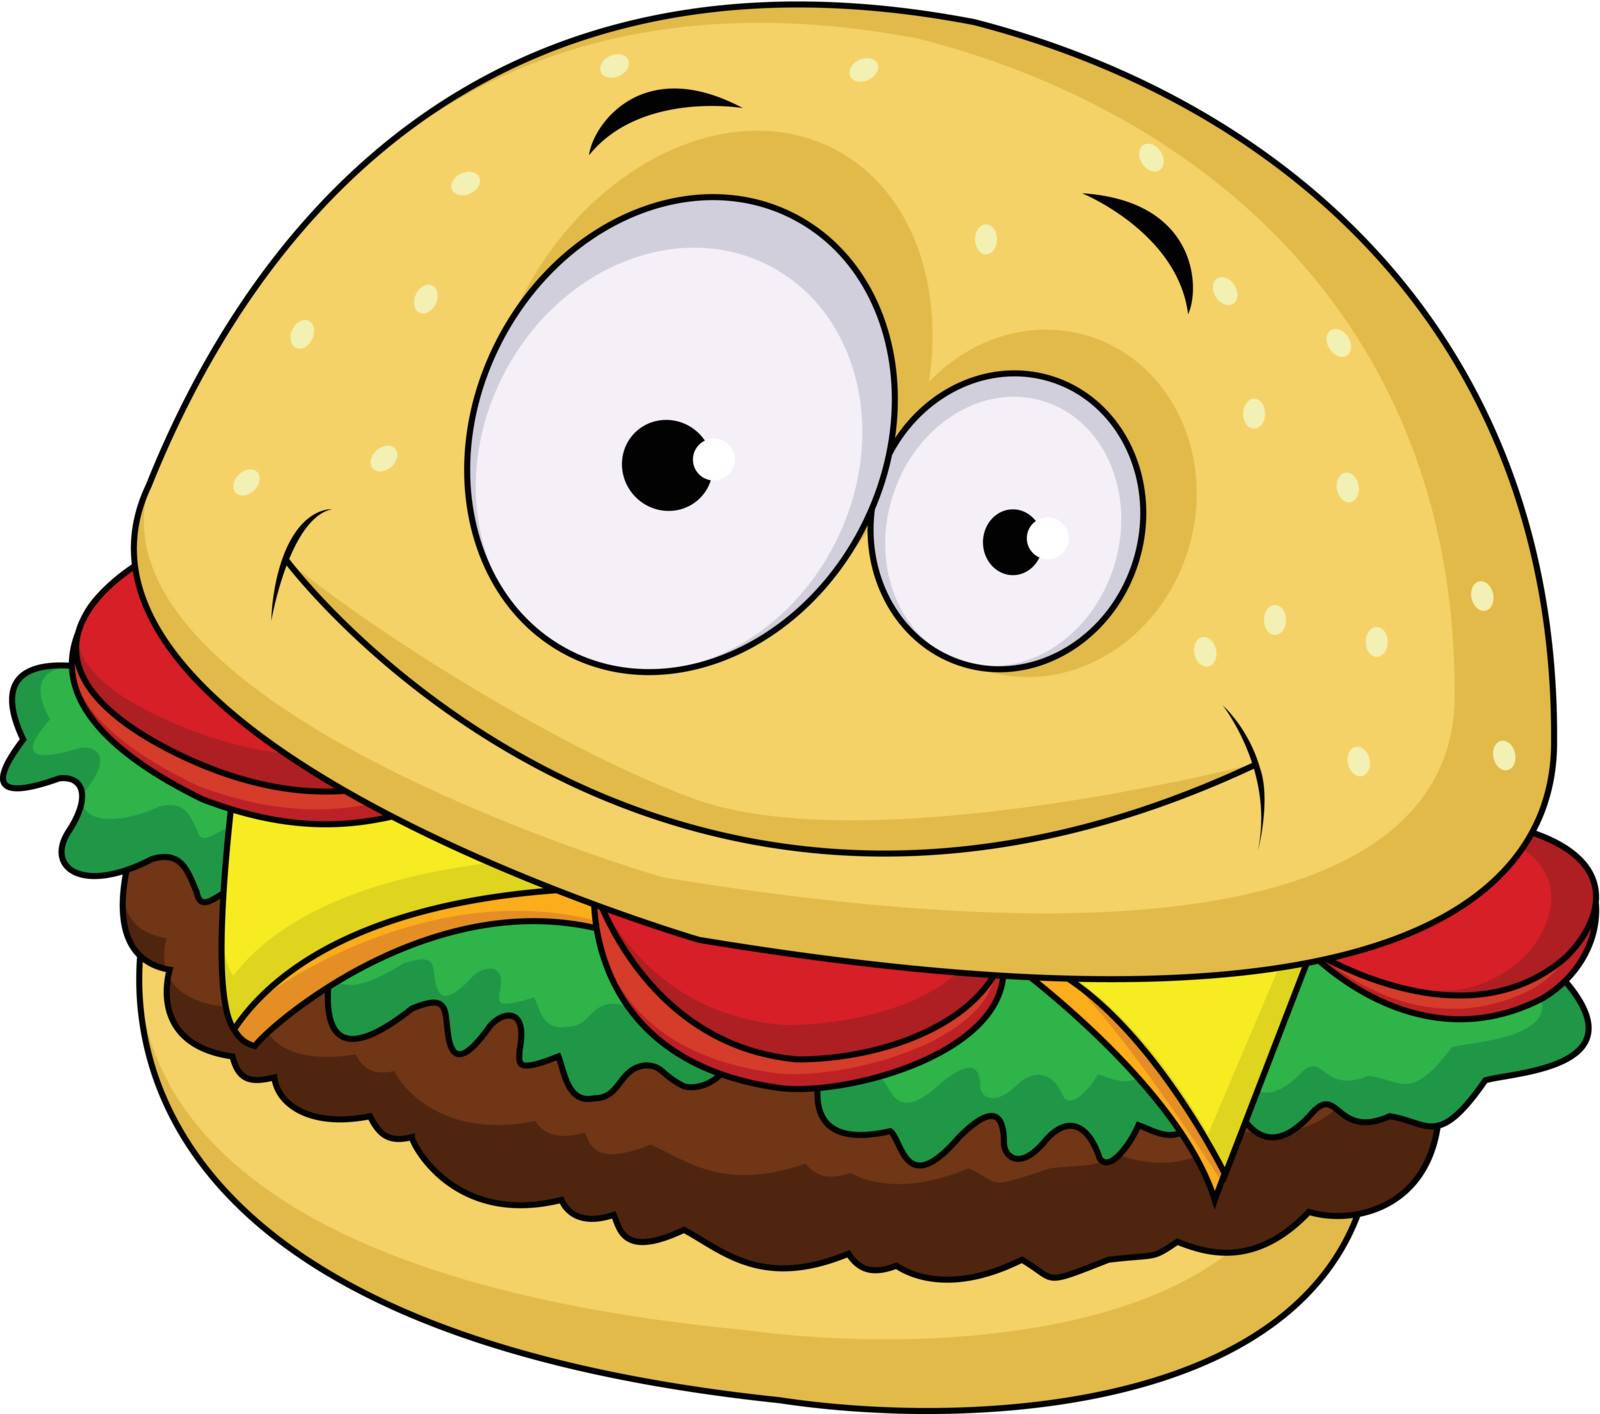 Burger cartoon character by Matamu